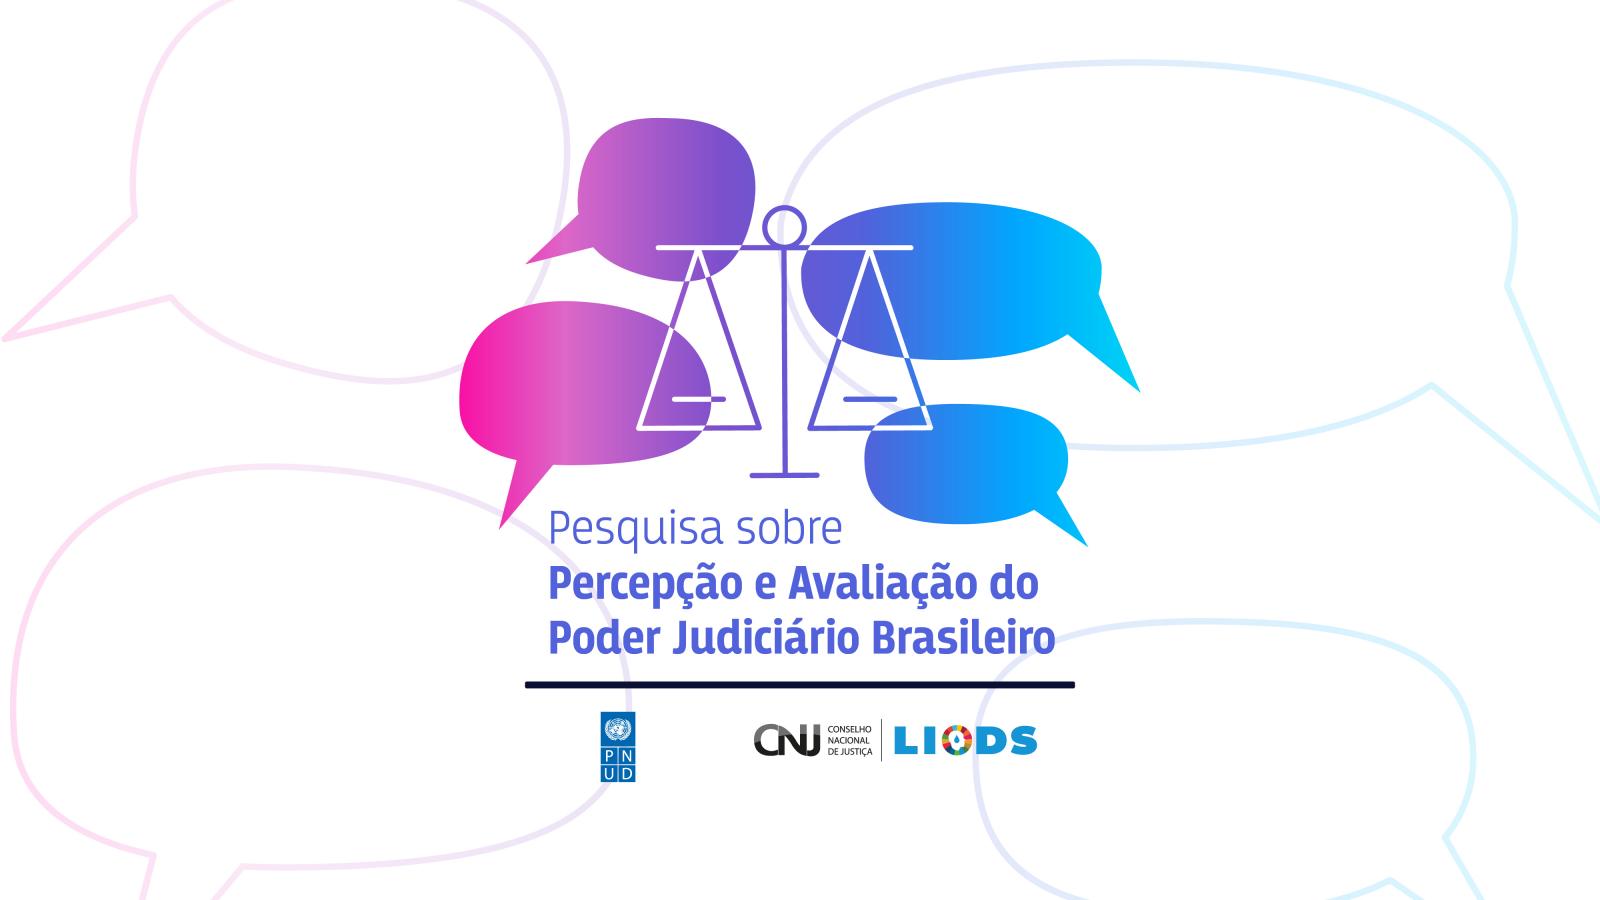 Banner com a informação: “Pesquisa sobre Percepção e Avaliação do Poder Judiciário Brasileiro”